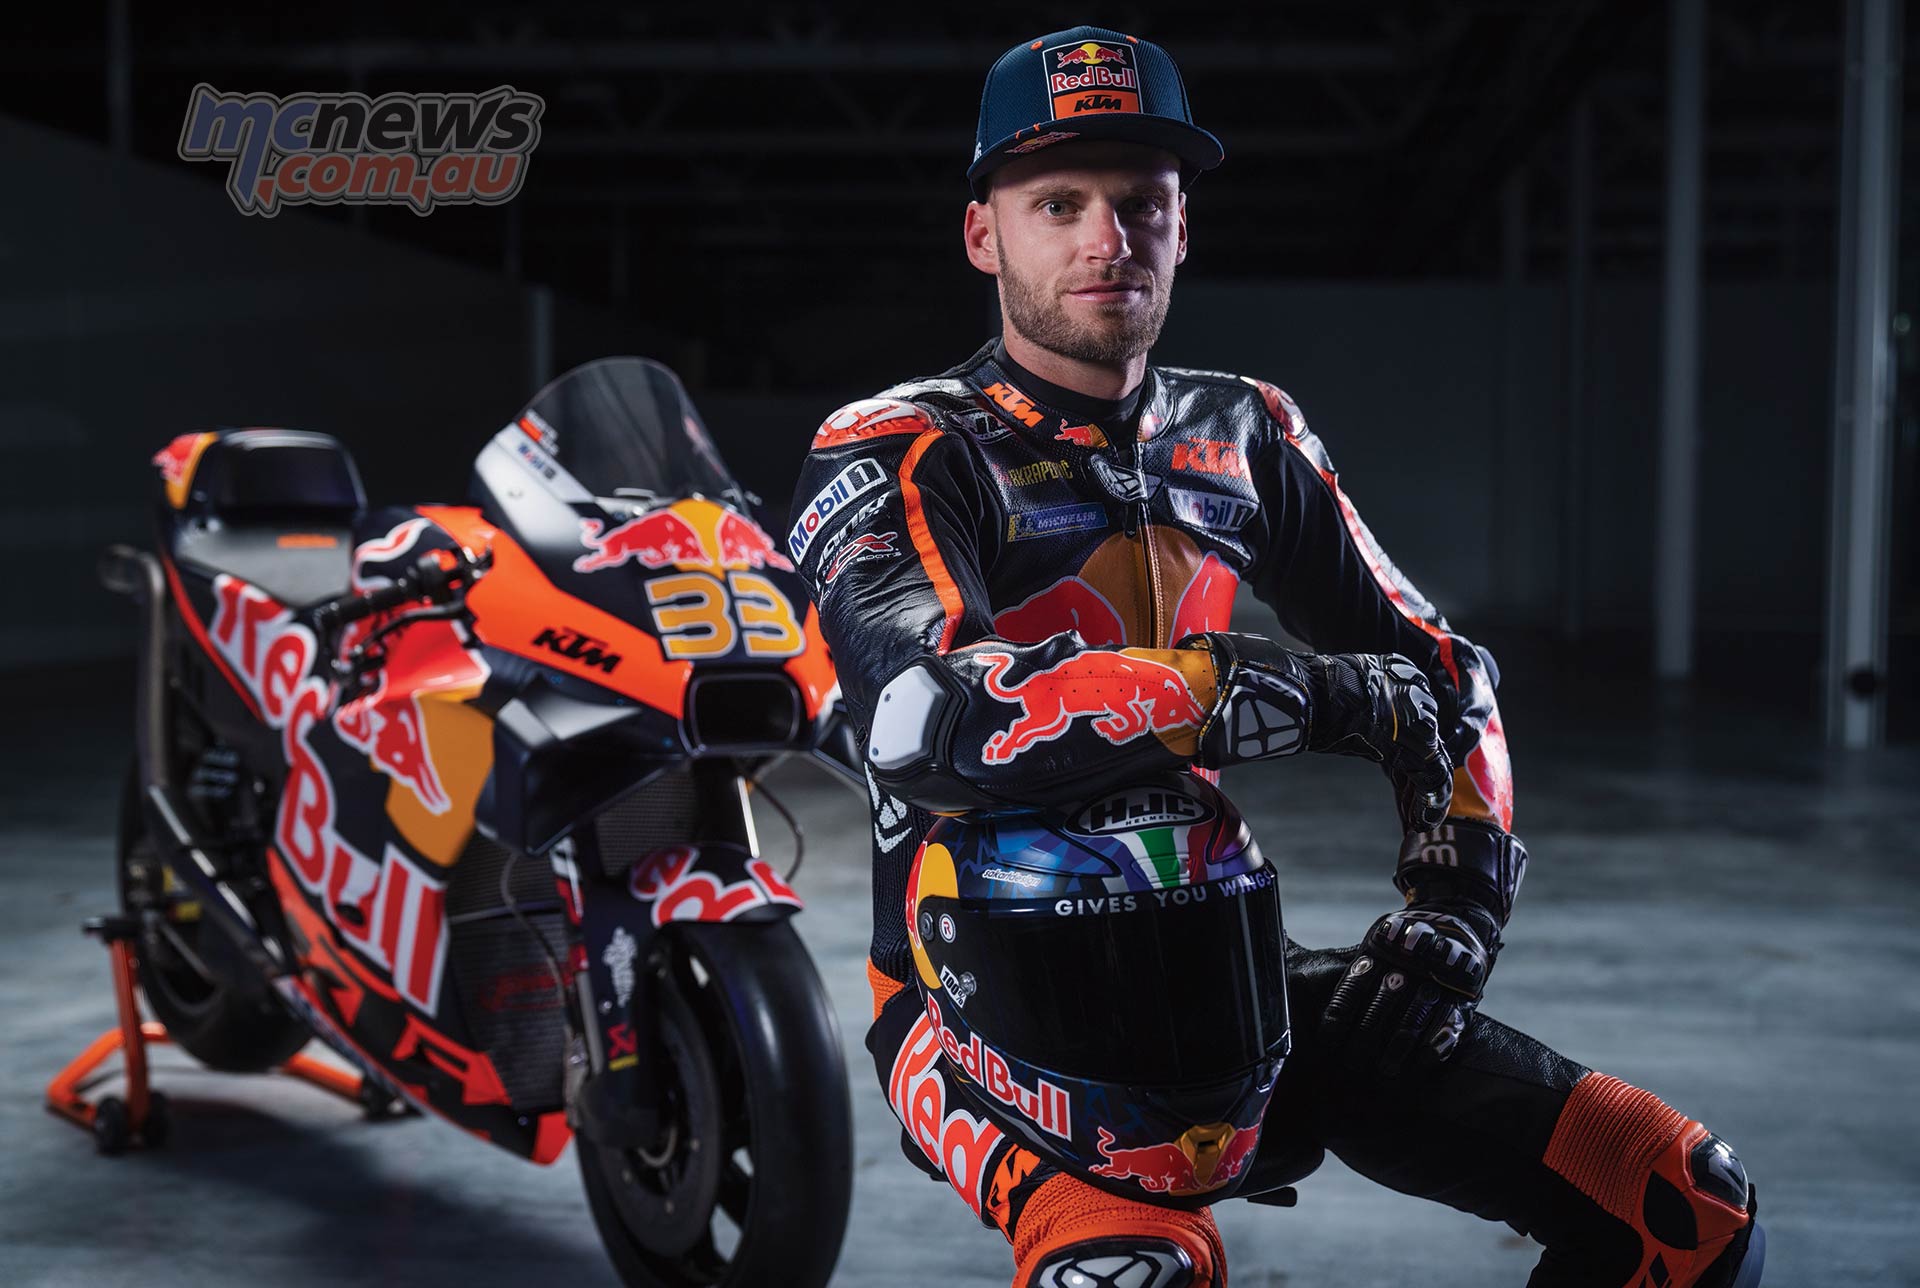 KTM mostra visual e máquina para a MotoGP 2023 - Racemotor